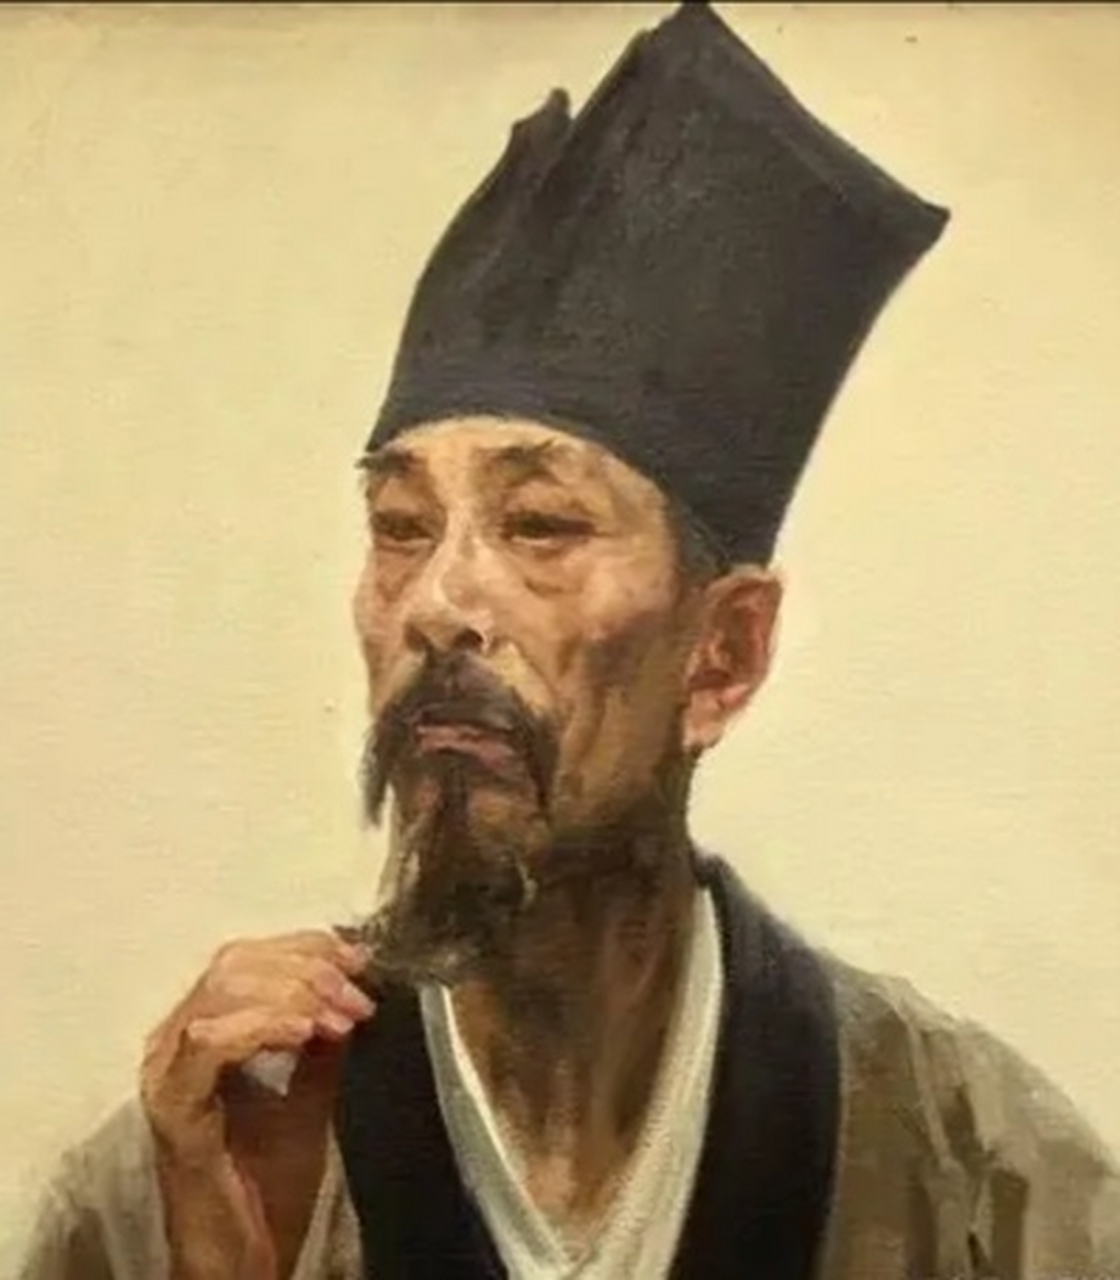 欧阳炯(896-971) 益州华阳(今属四川成都市)人,他生于唐末,一生经历了